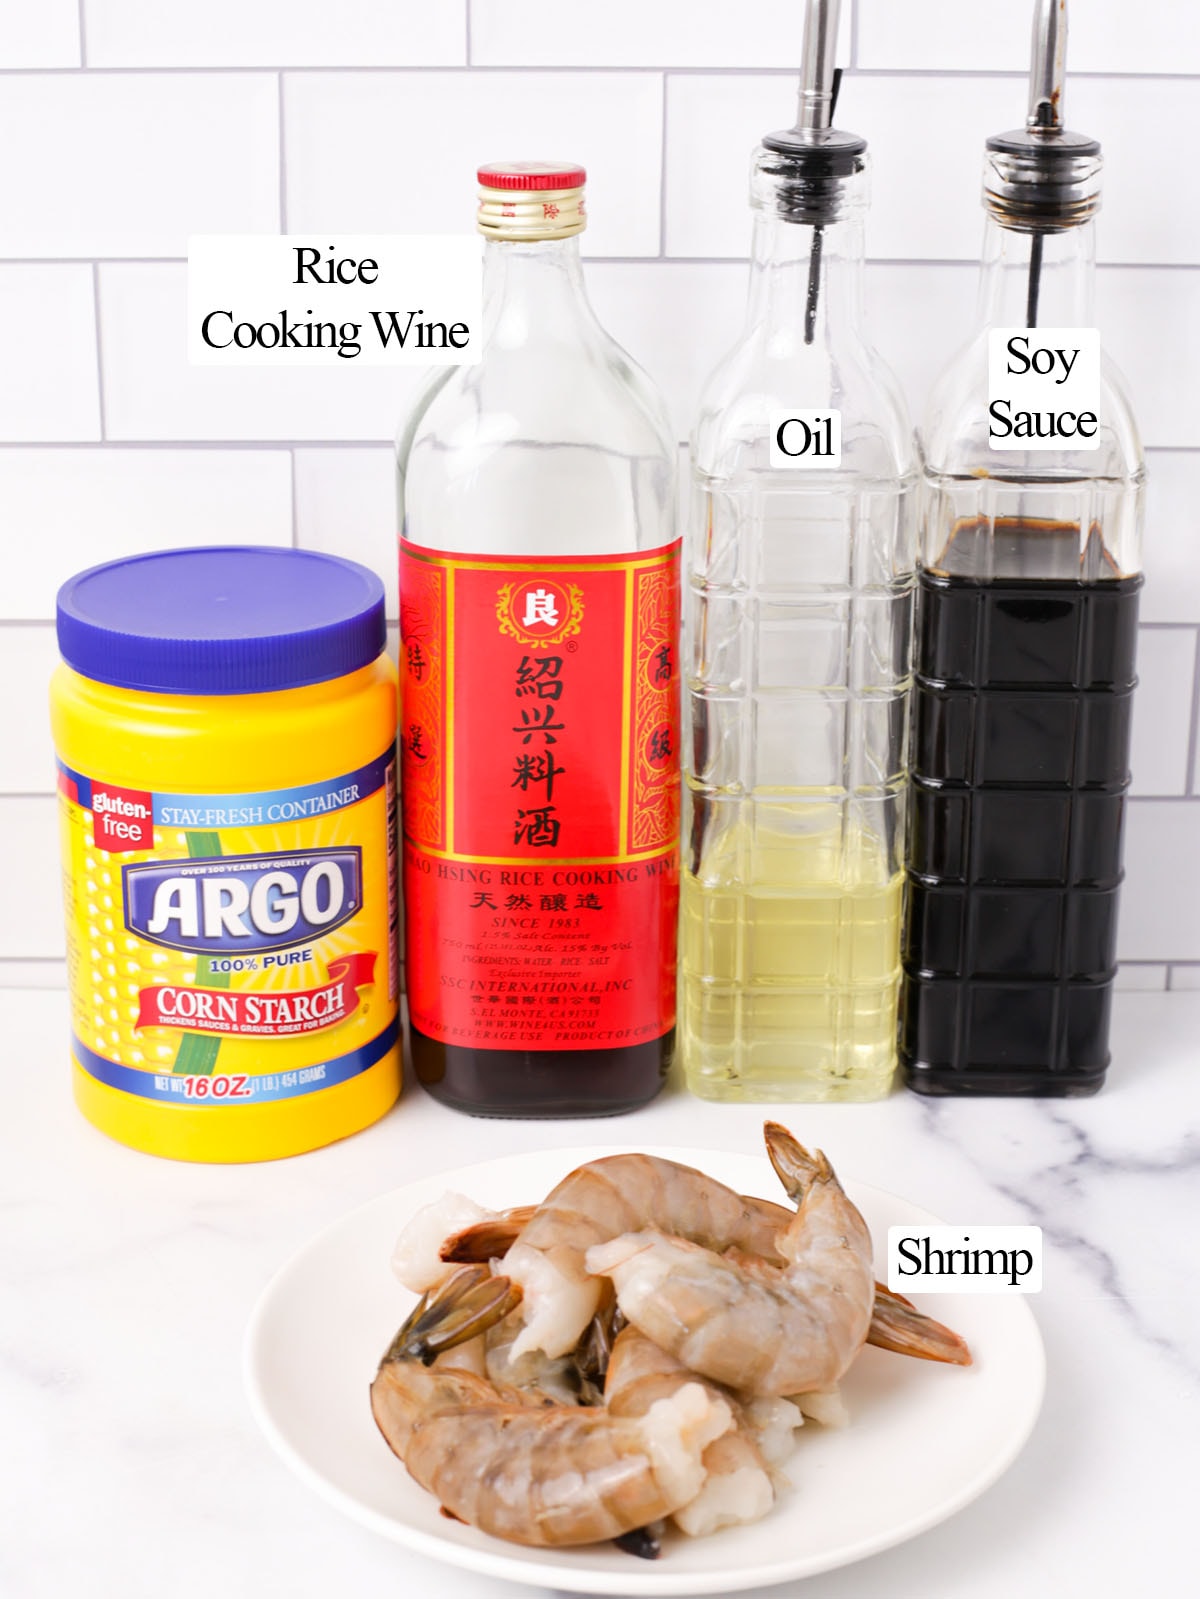 Ingredients for marinating shrimps for stir frying.